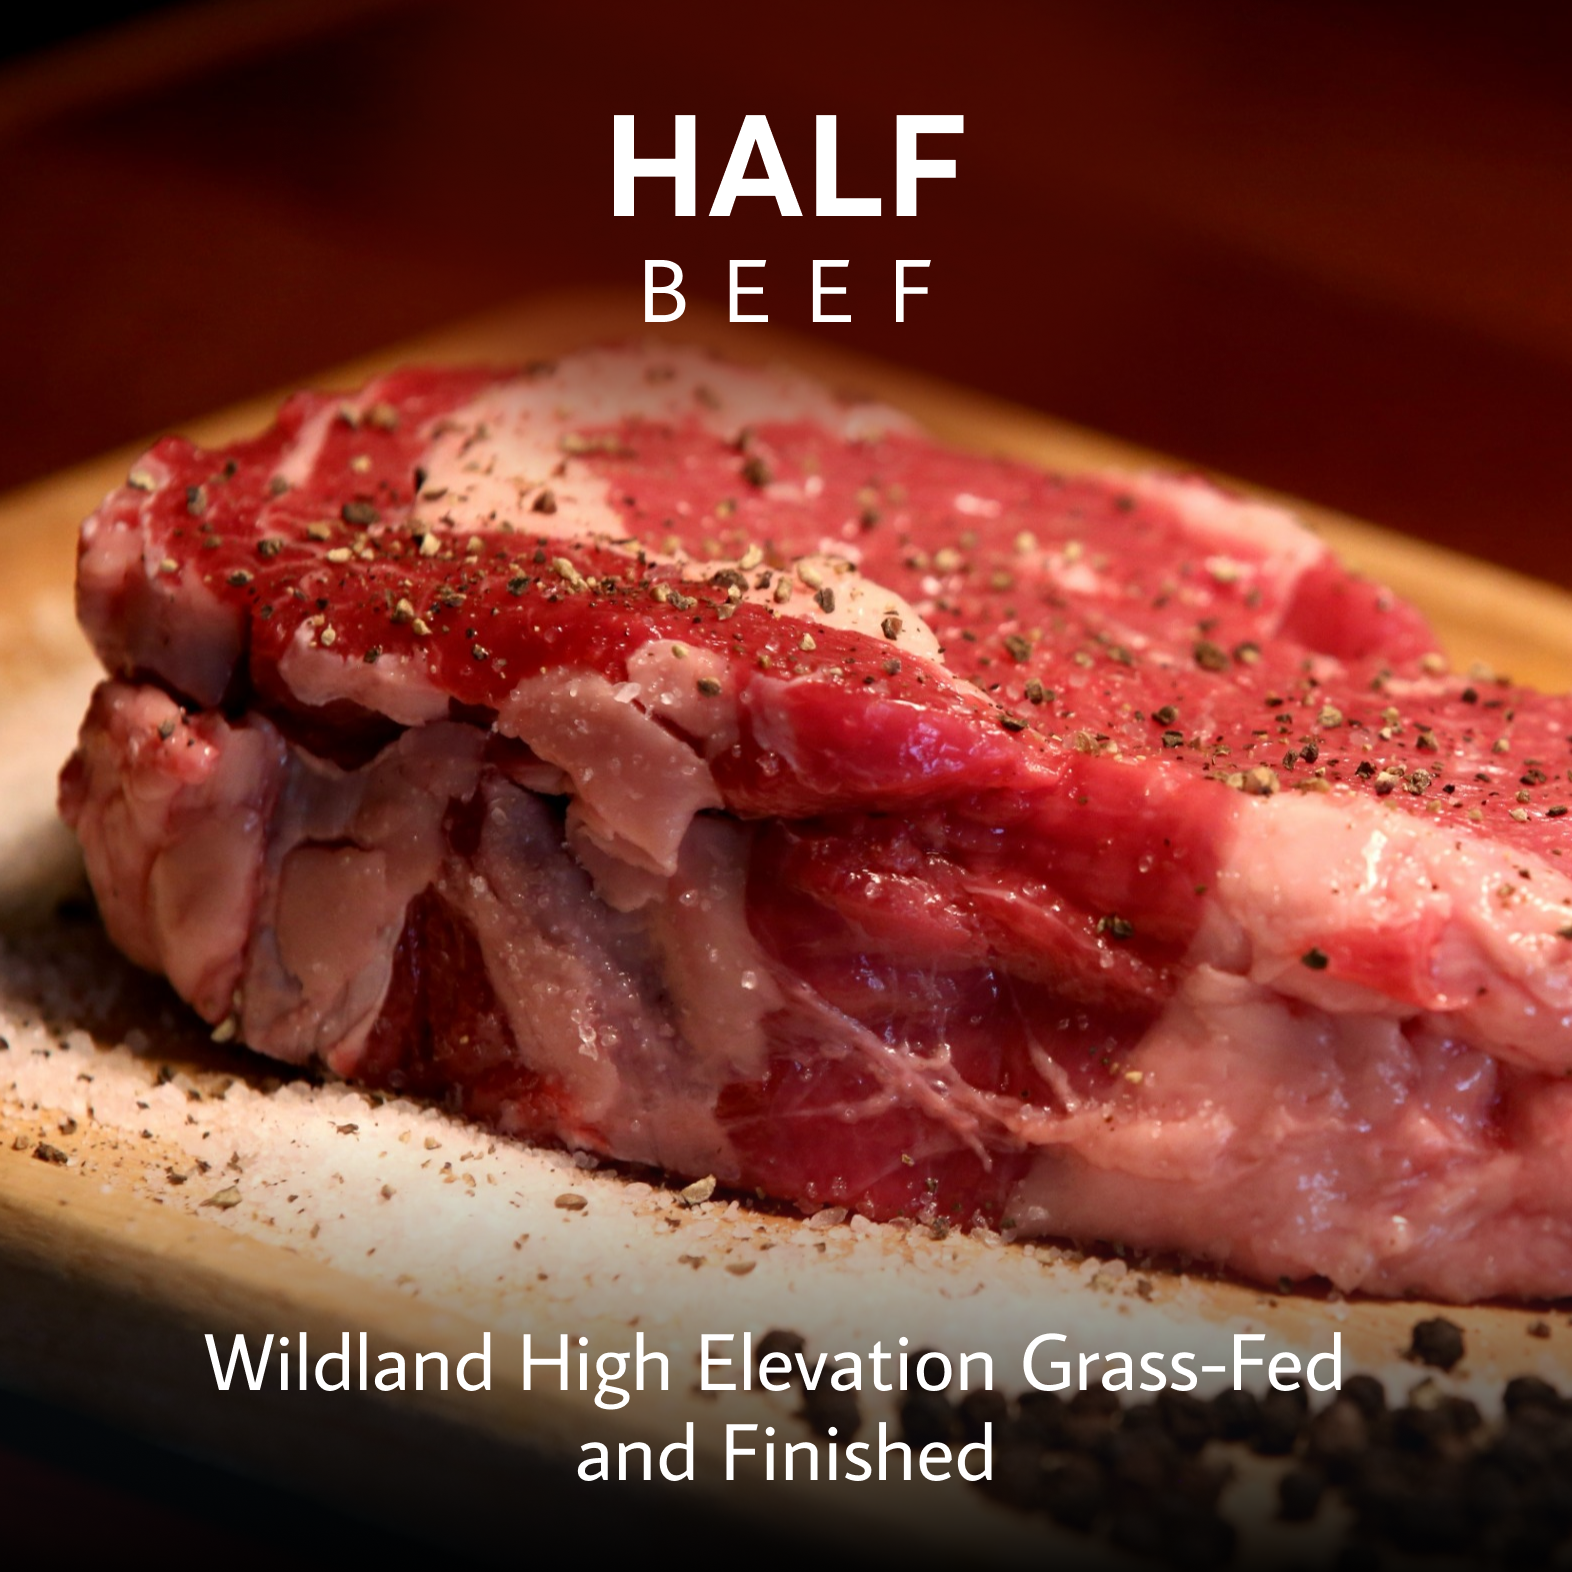 Half Beef Deposit (200 lbs.) $500